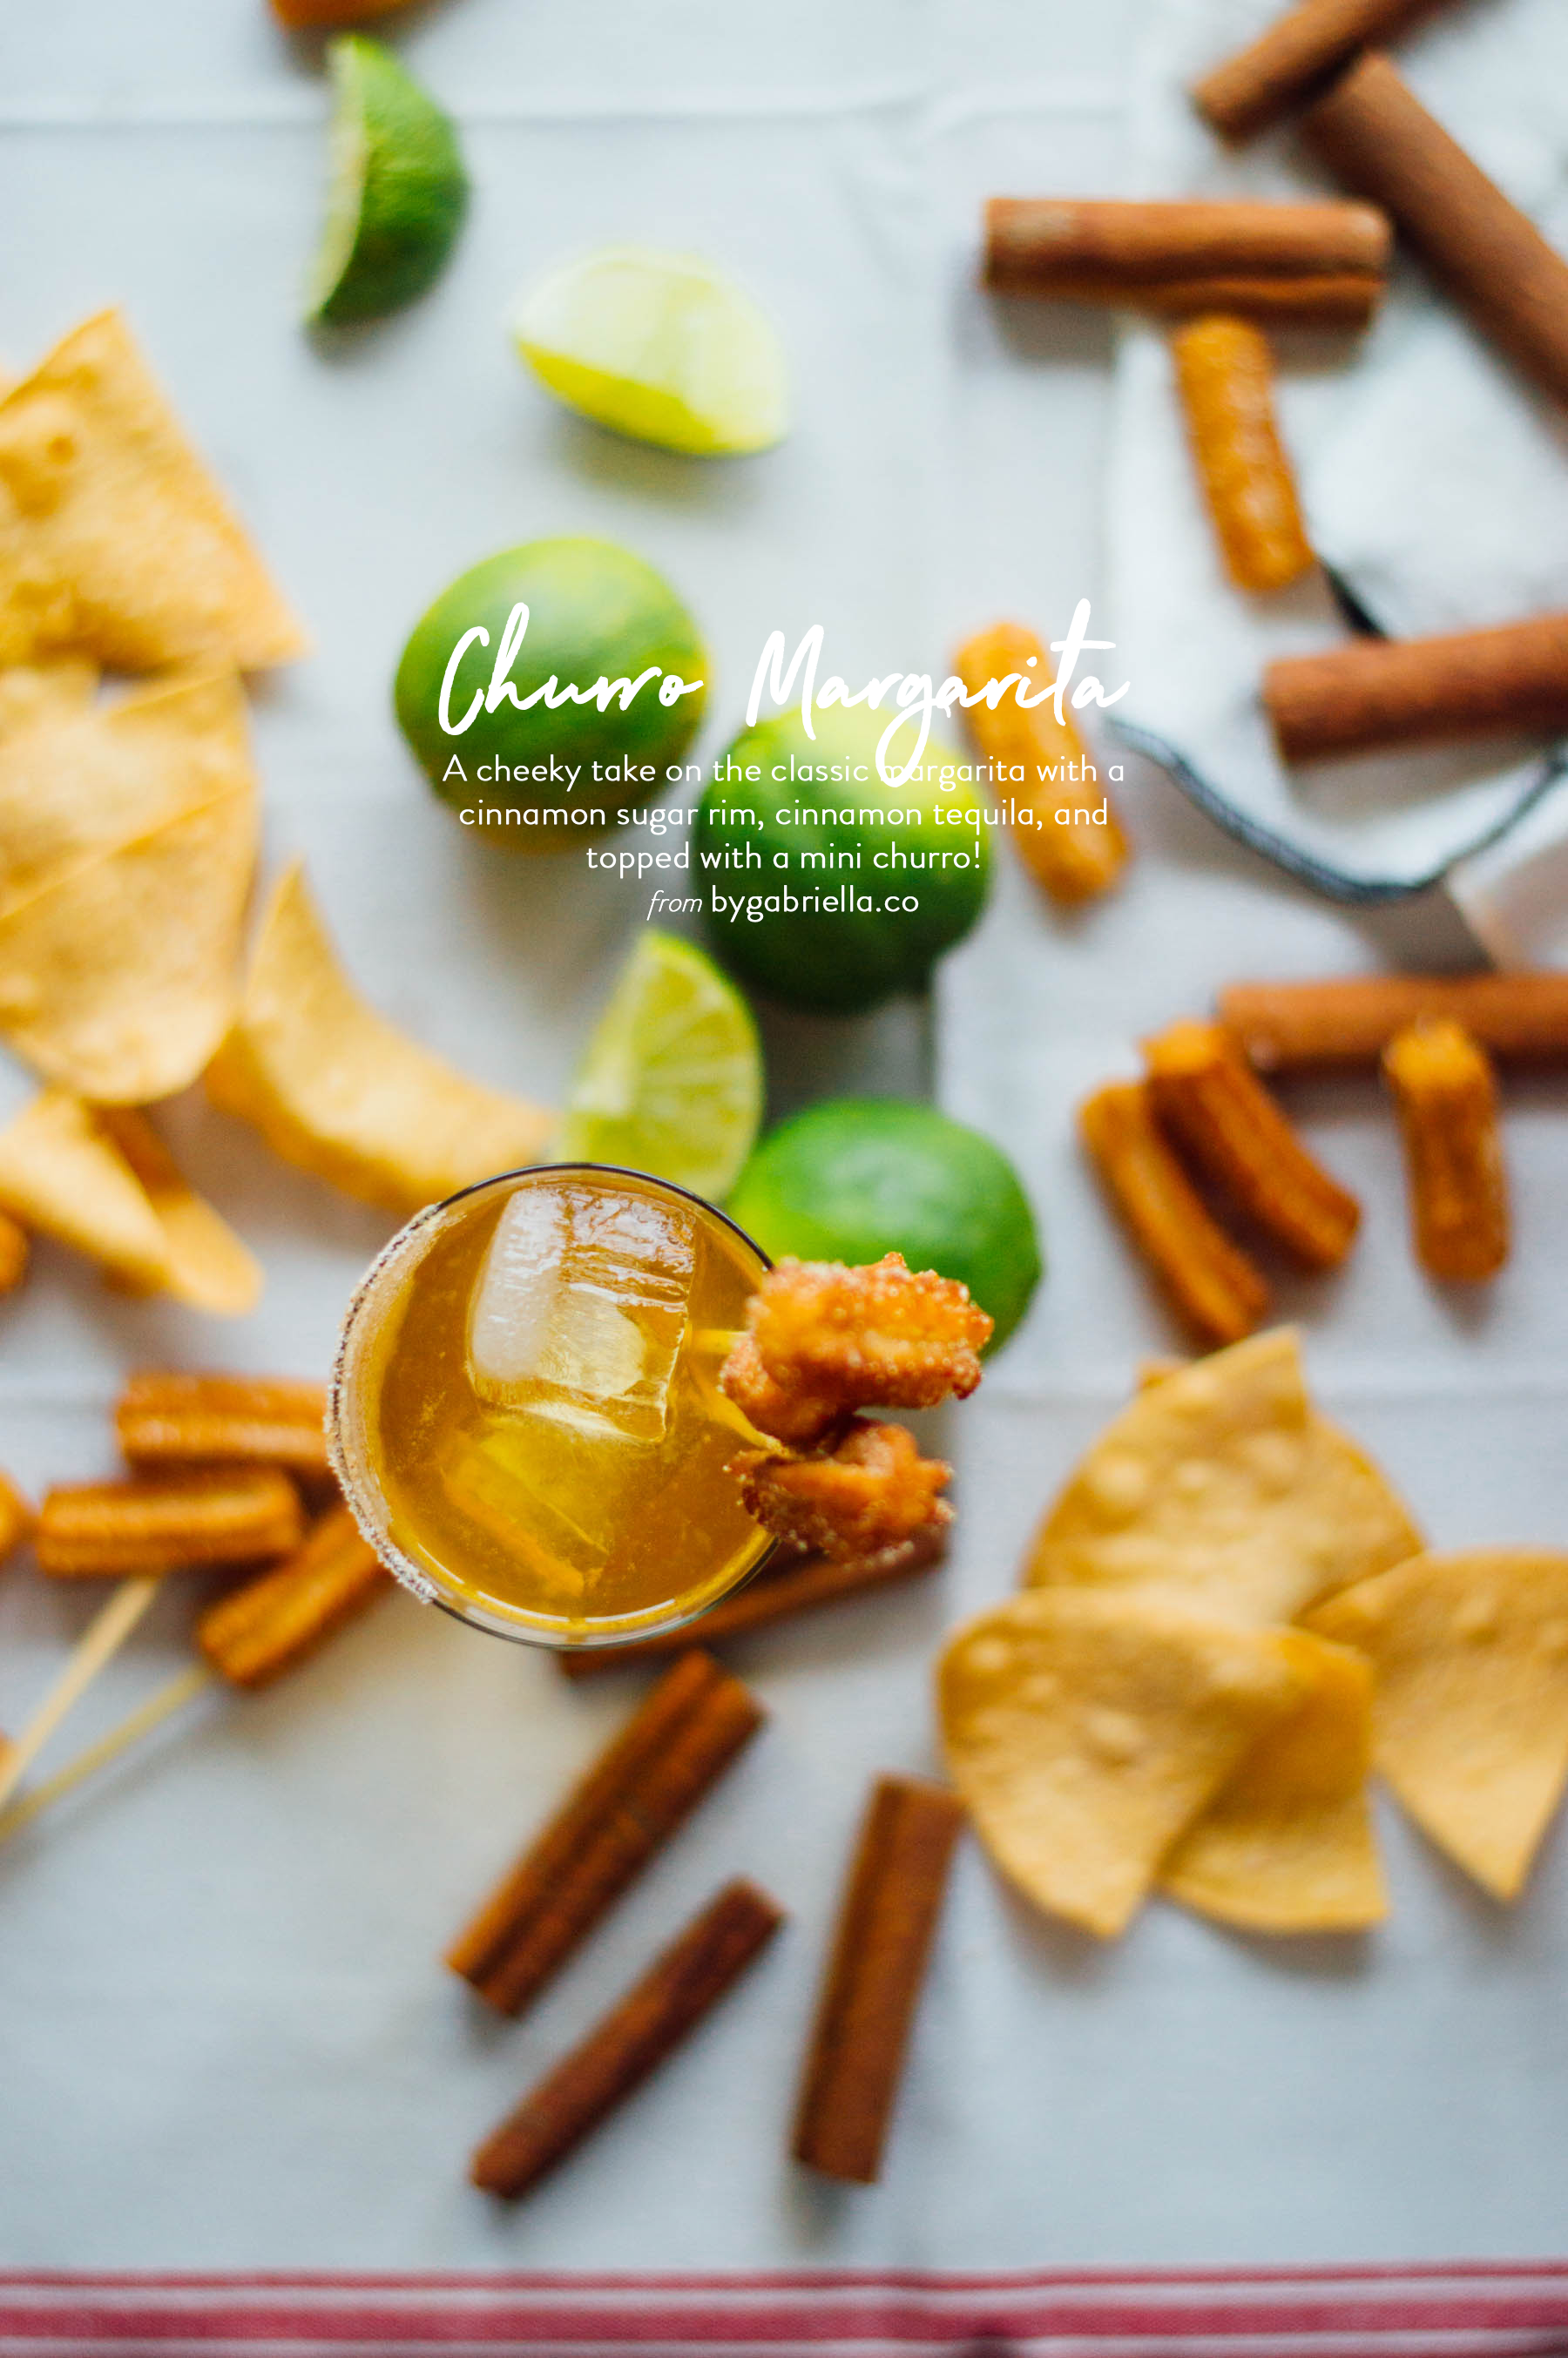 Meet the Cinnamon Sugar Churro Margarita. A cheeky take on the classic margarita. Click through for the full recipe on By Gabriella | bygabriella.co